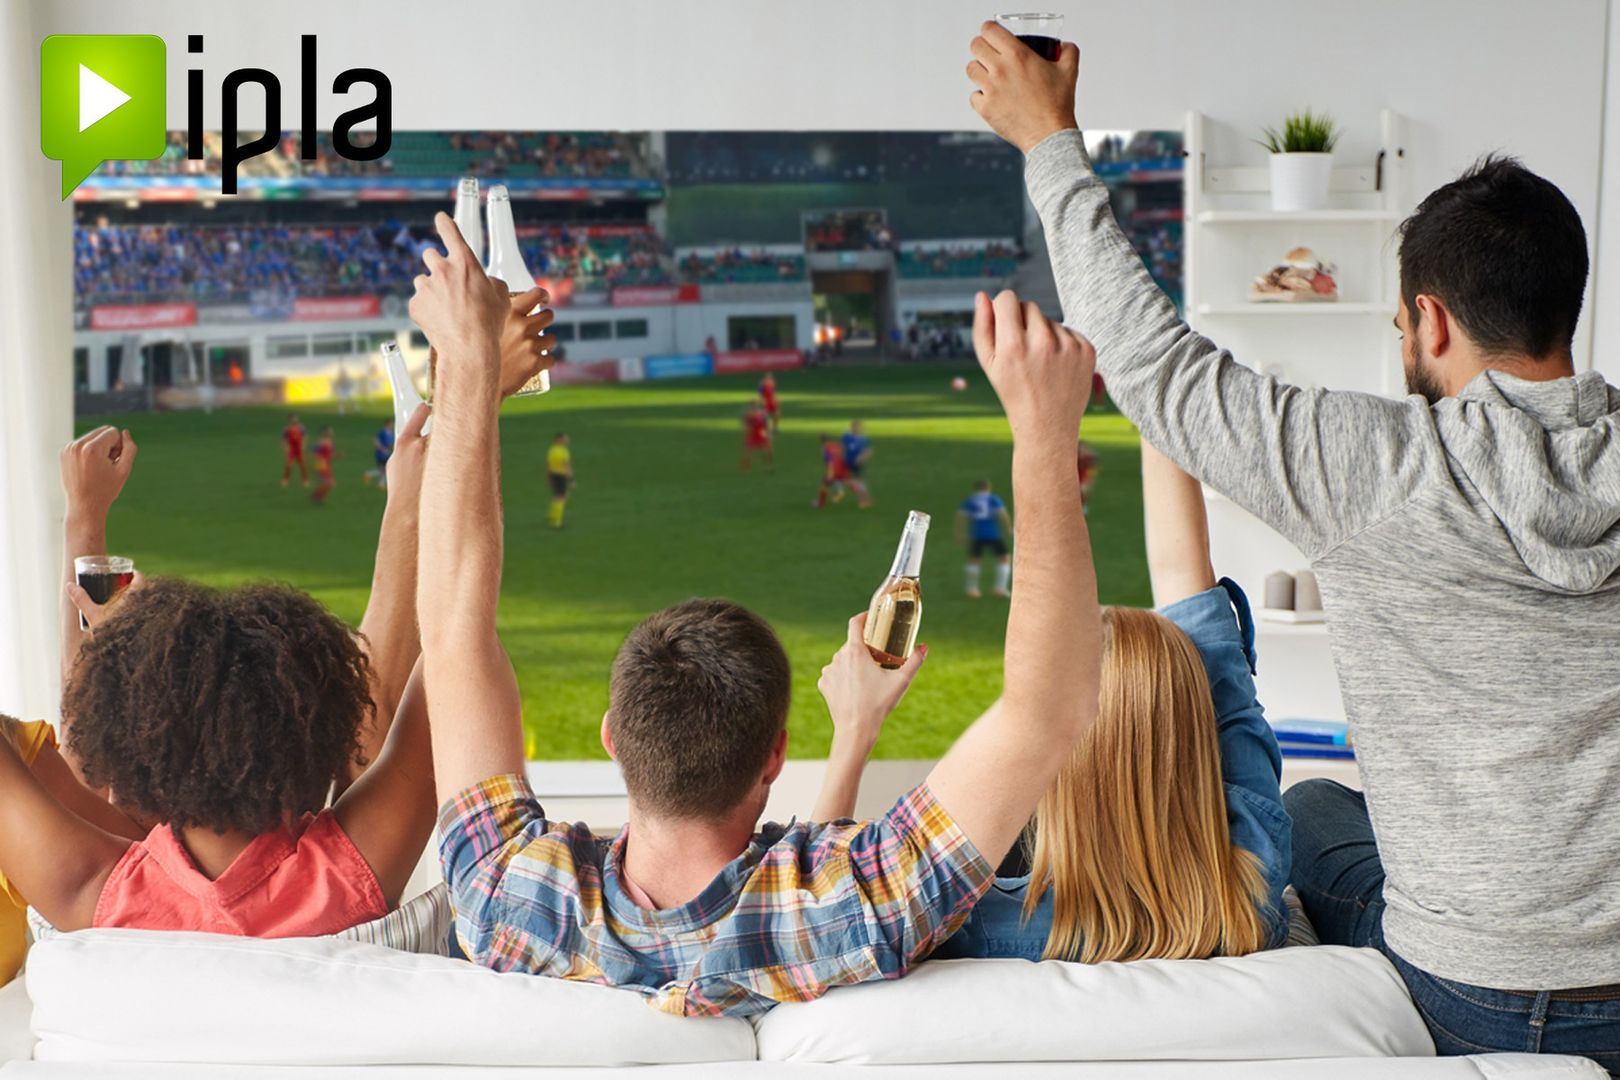 IPLA - telewizja online dla współczesnego użytkownika